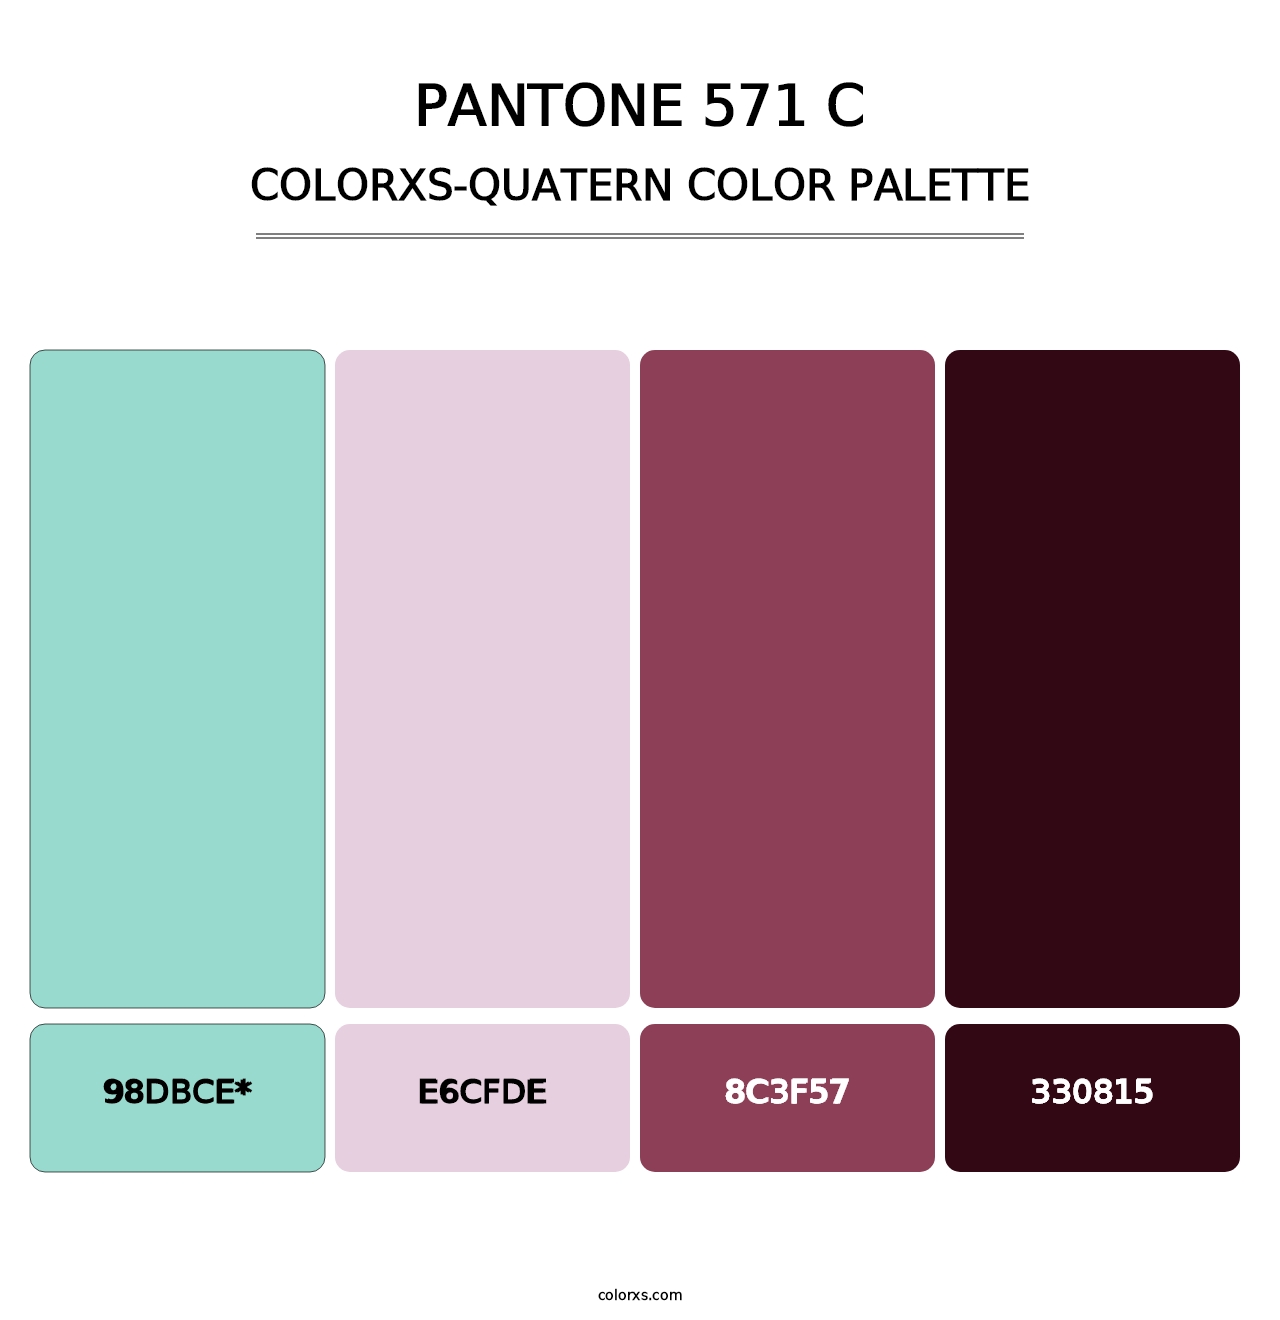 PANTONE 571 C - Colorxs Quatern Palette